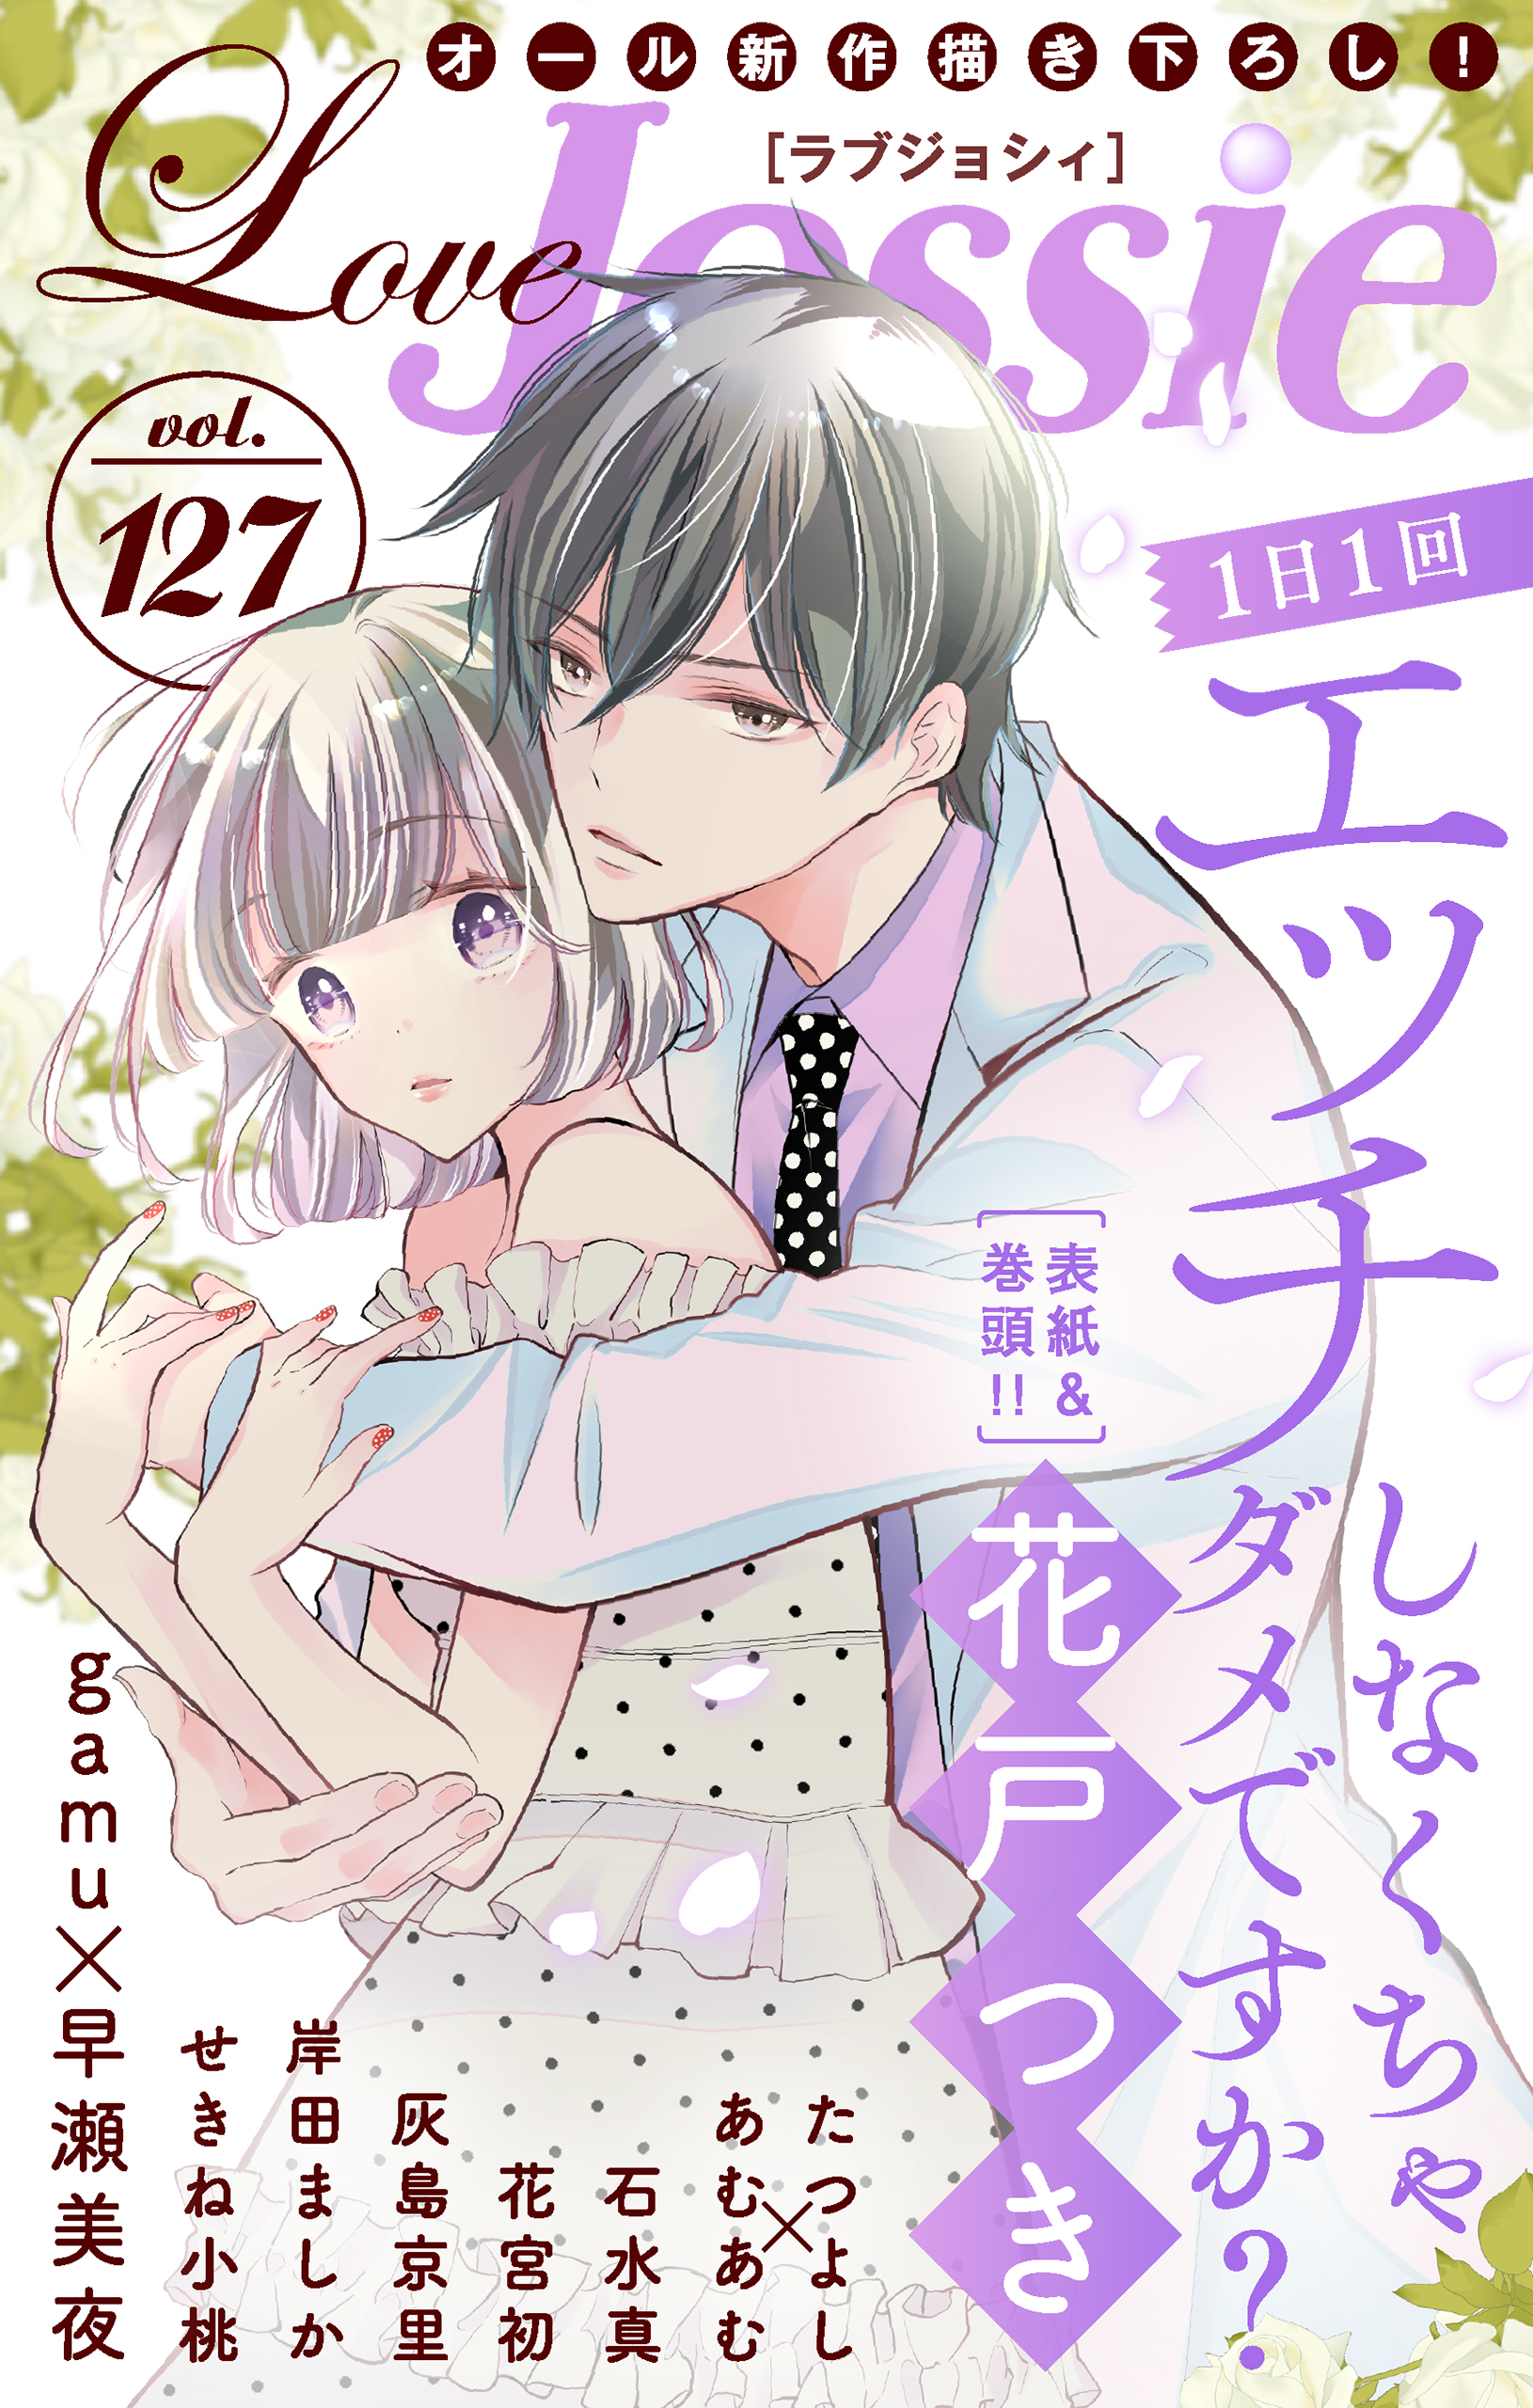 Love Jossie Vol.127 - 花戸つき/gamu - 漫画・ラノベ（小説）・無料